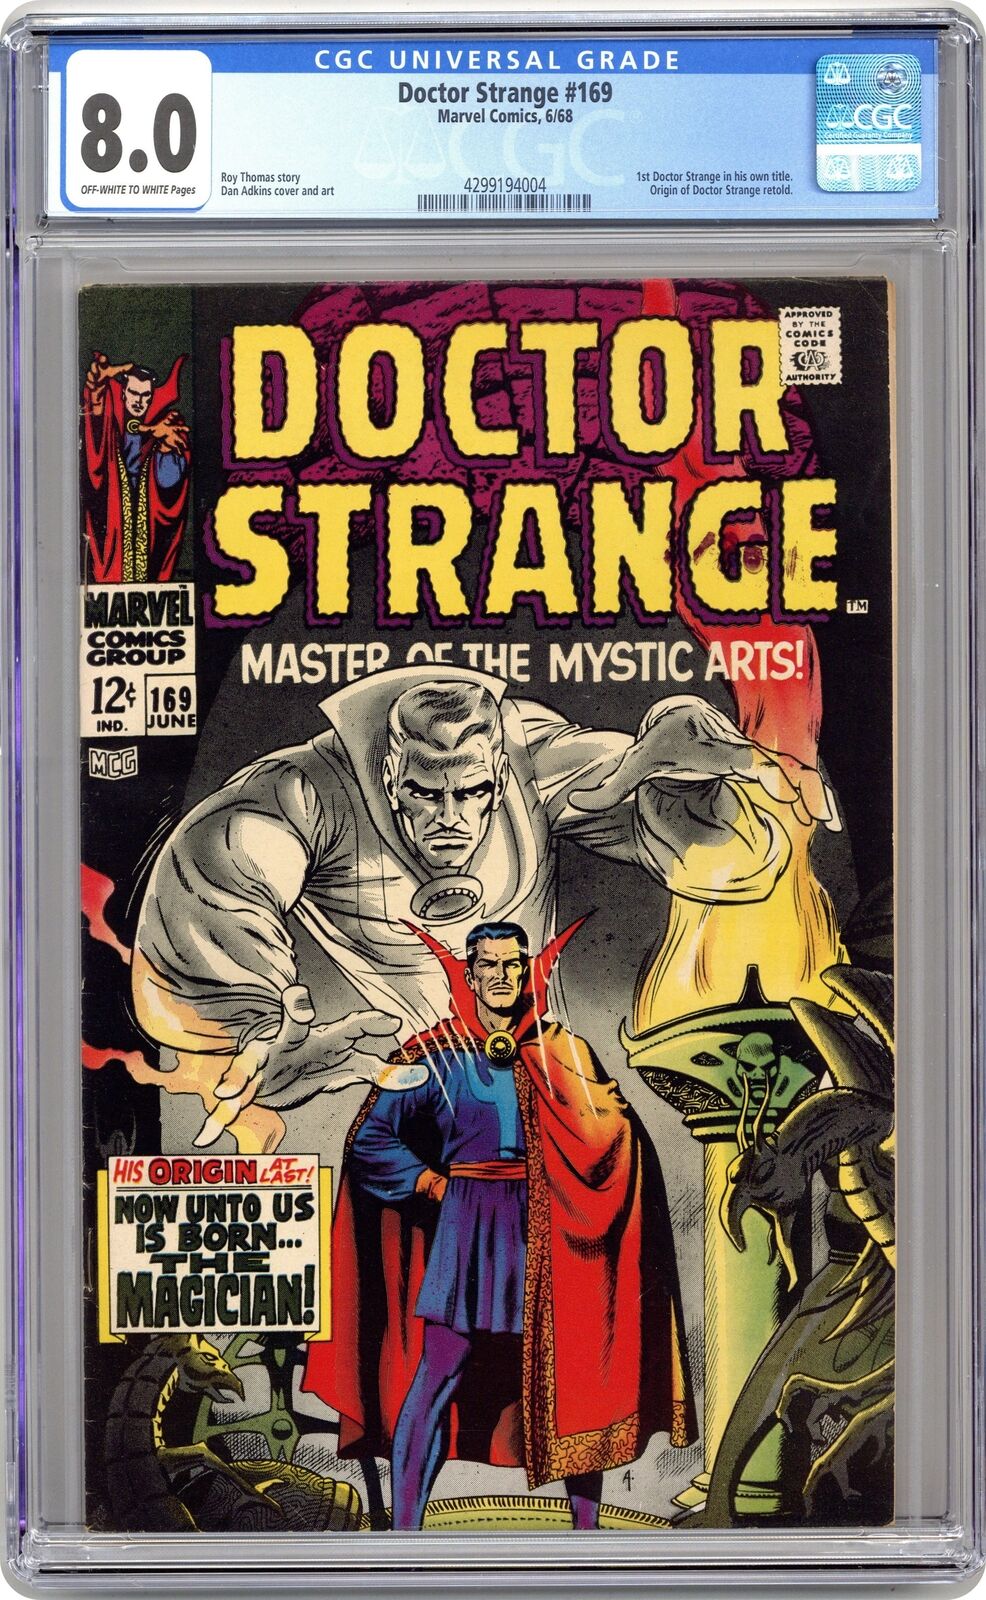 Doctor Strange #169 CGC 8.0 1968 4299194004 1st Doctor Strange in own title